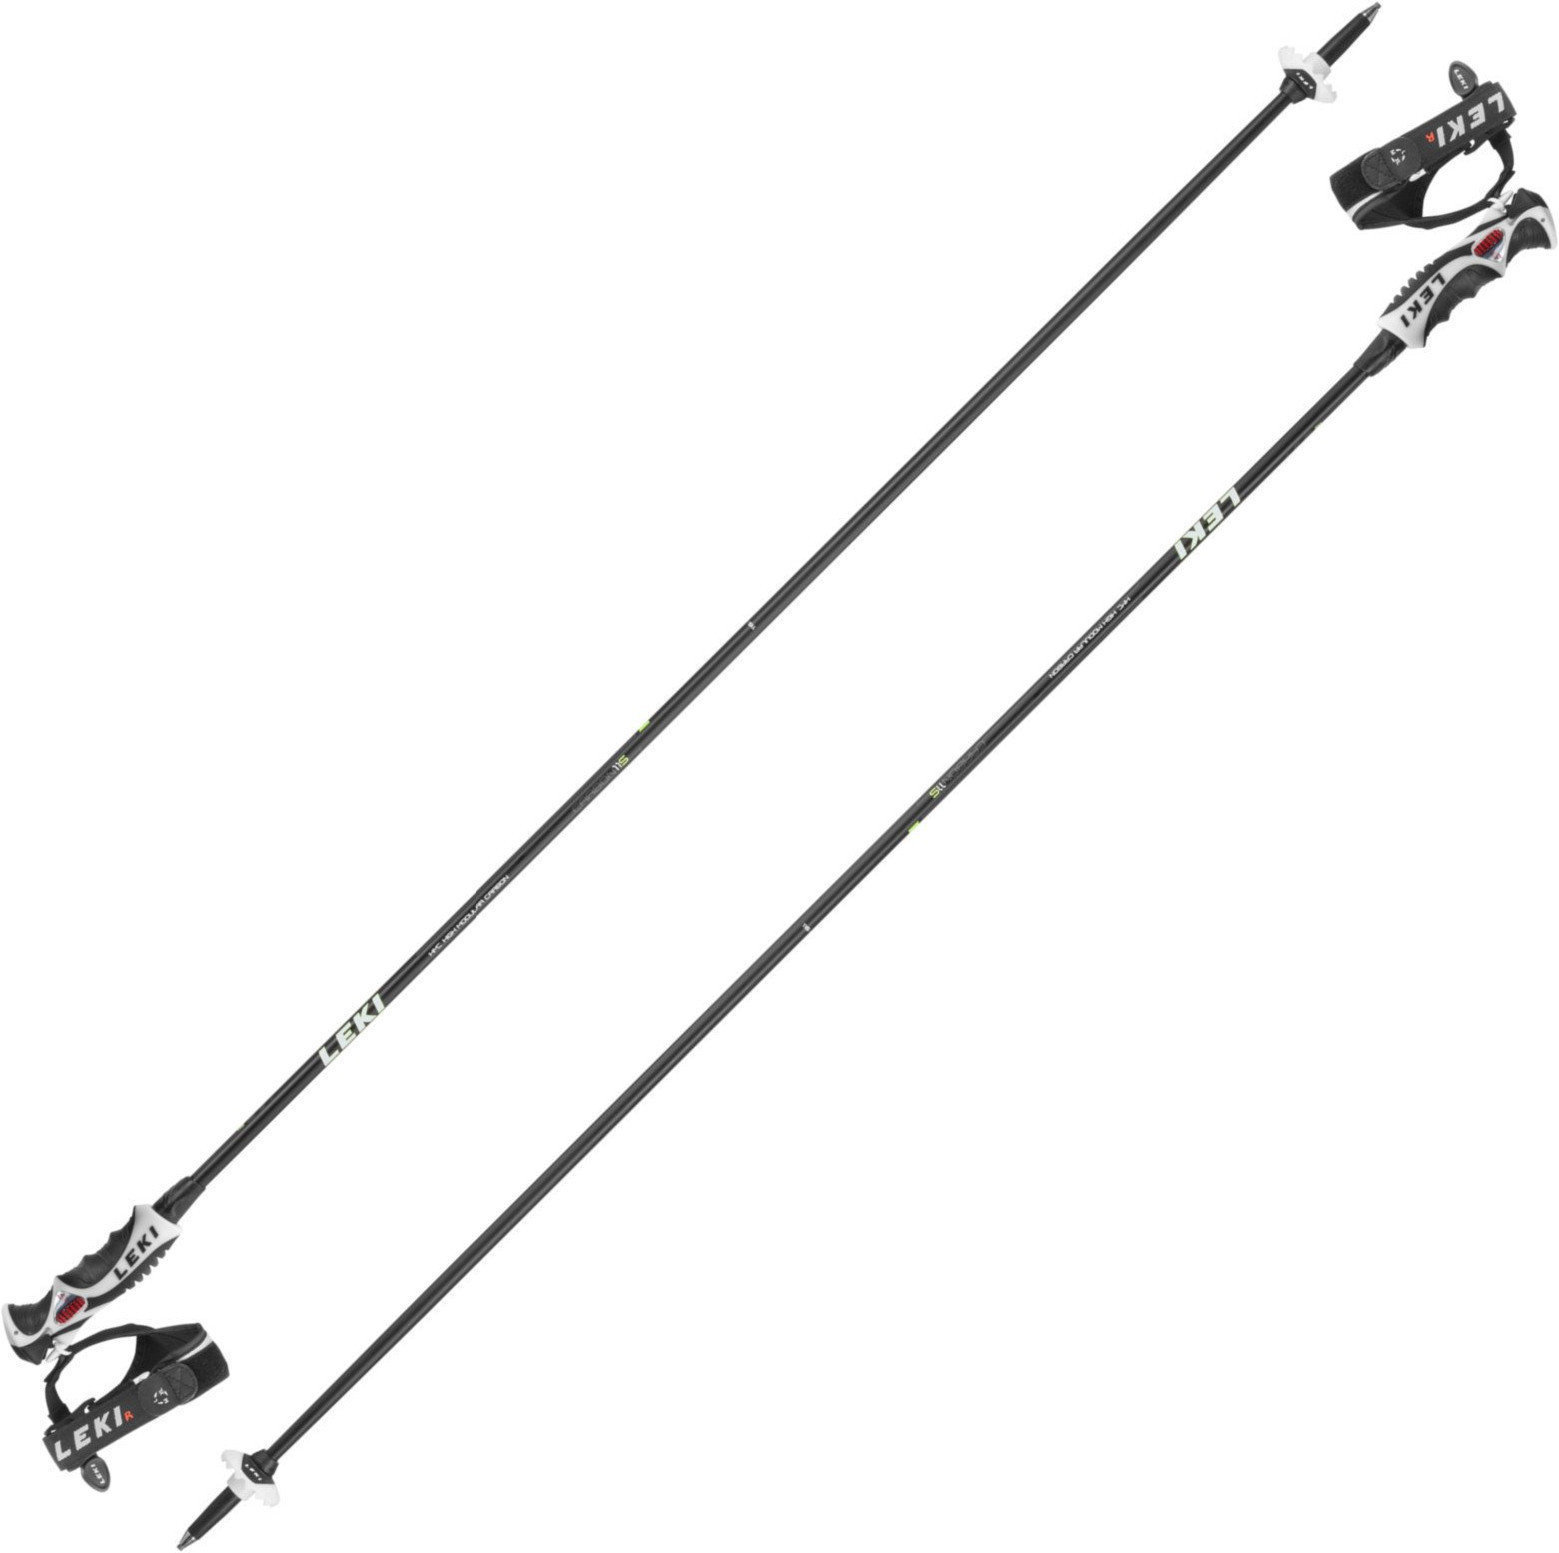 Ski Poles Leki Carbon 11 S Black/White/Yellow/Antracite 125 cm Ski Poles